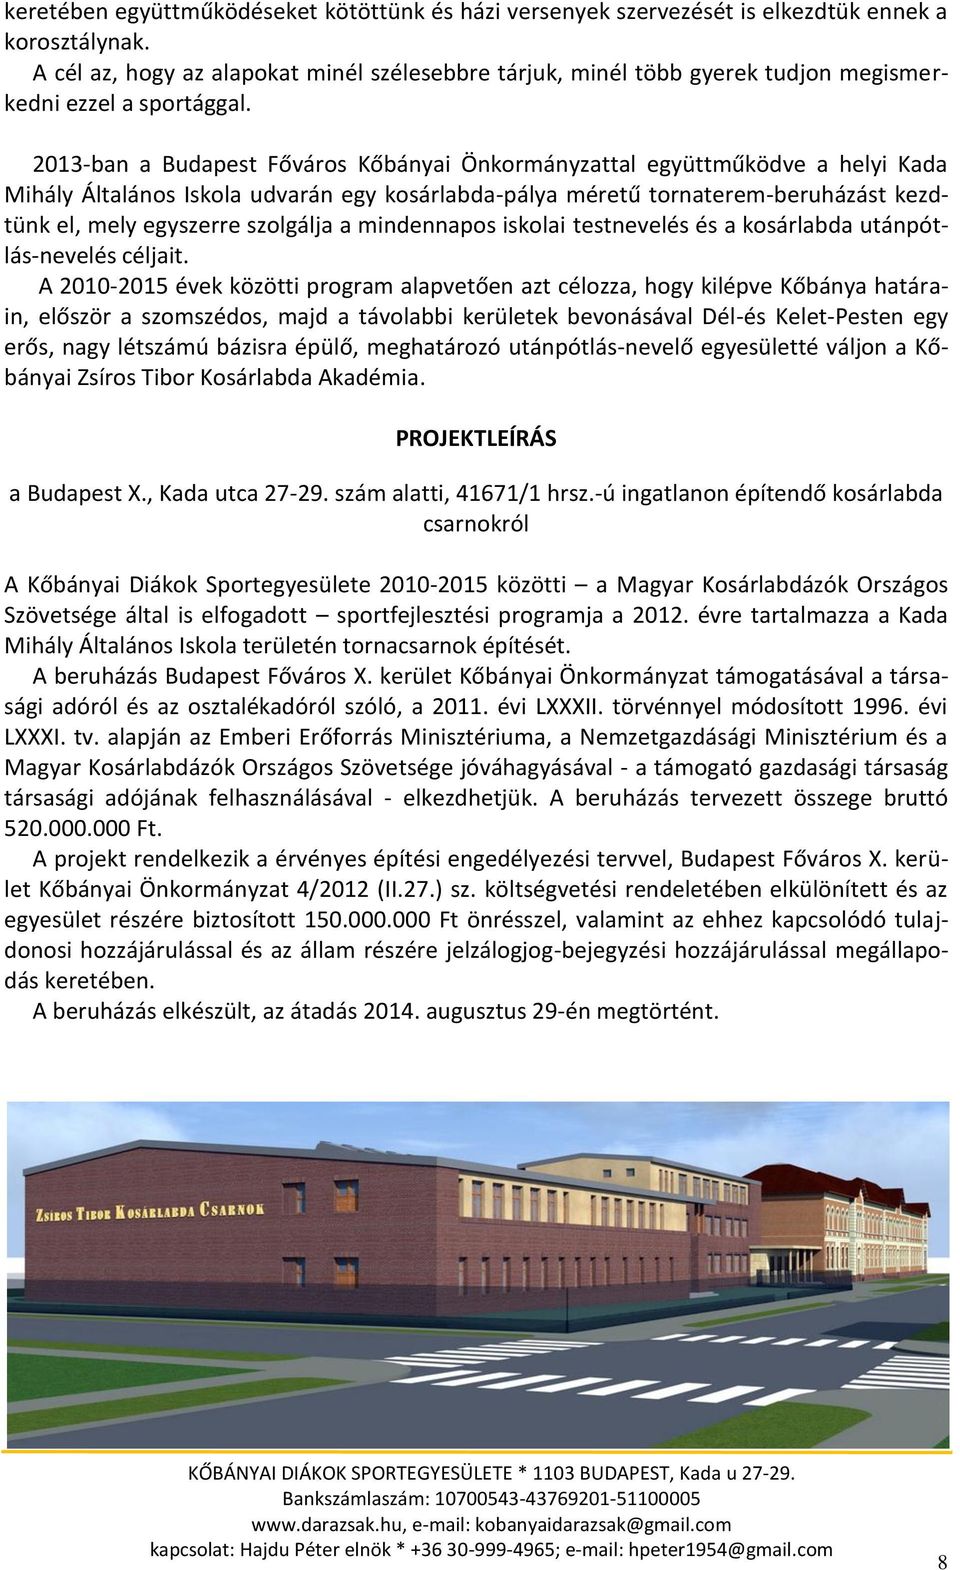 2013-ban a Budapest Főváros Kőbányai Önkormányzattal együttműködve a helyi Kada Mihály Általános Iskola udvarán egy kosárlabda-pálya méretű tornaterem-beruházást kezdtünk el, mely egyszerre szolgálja